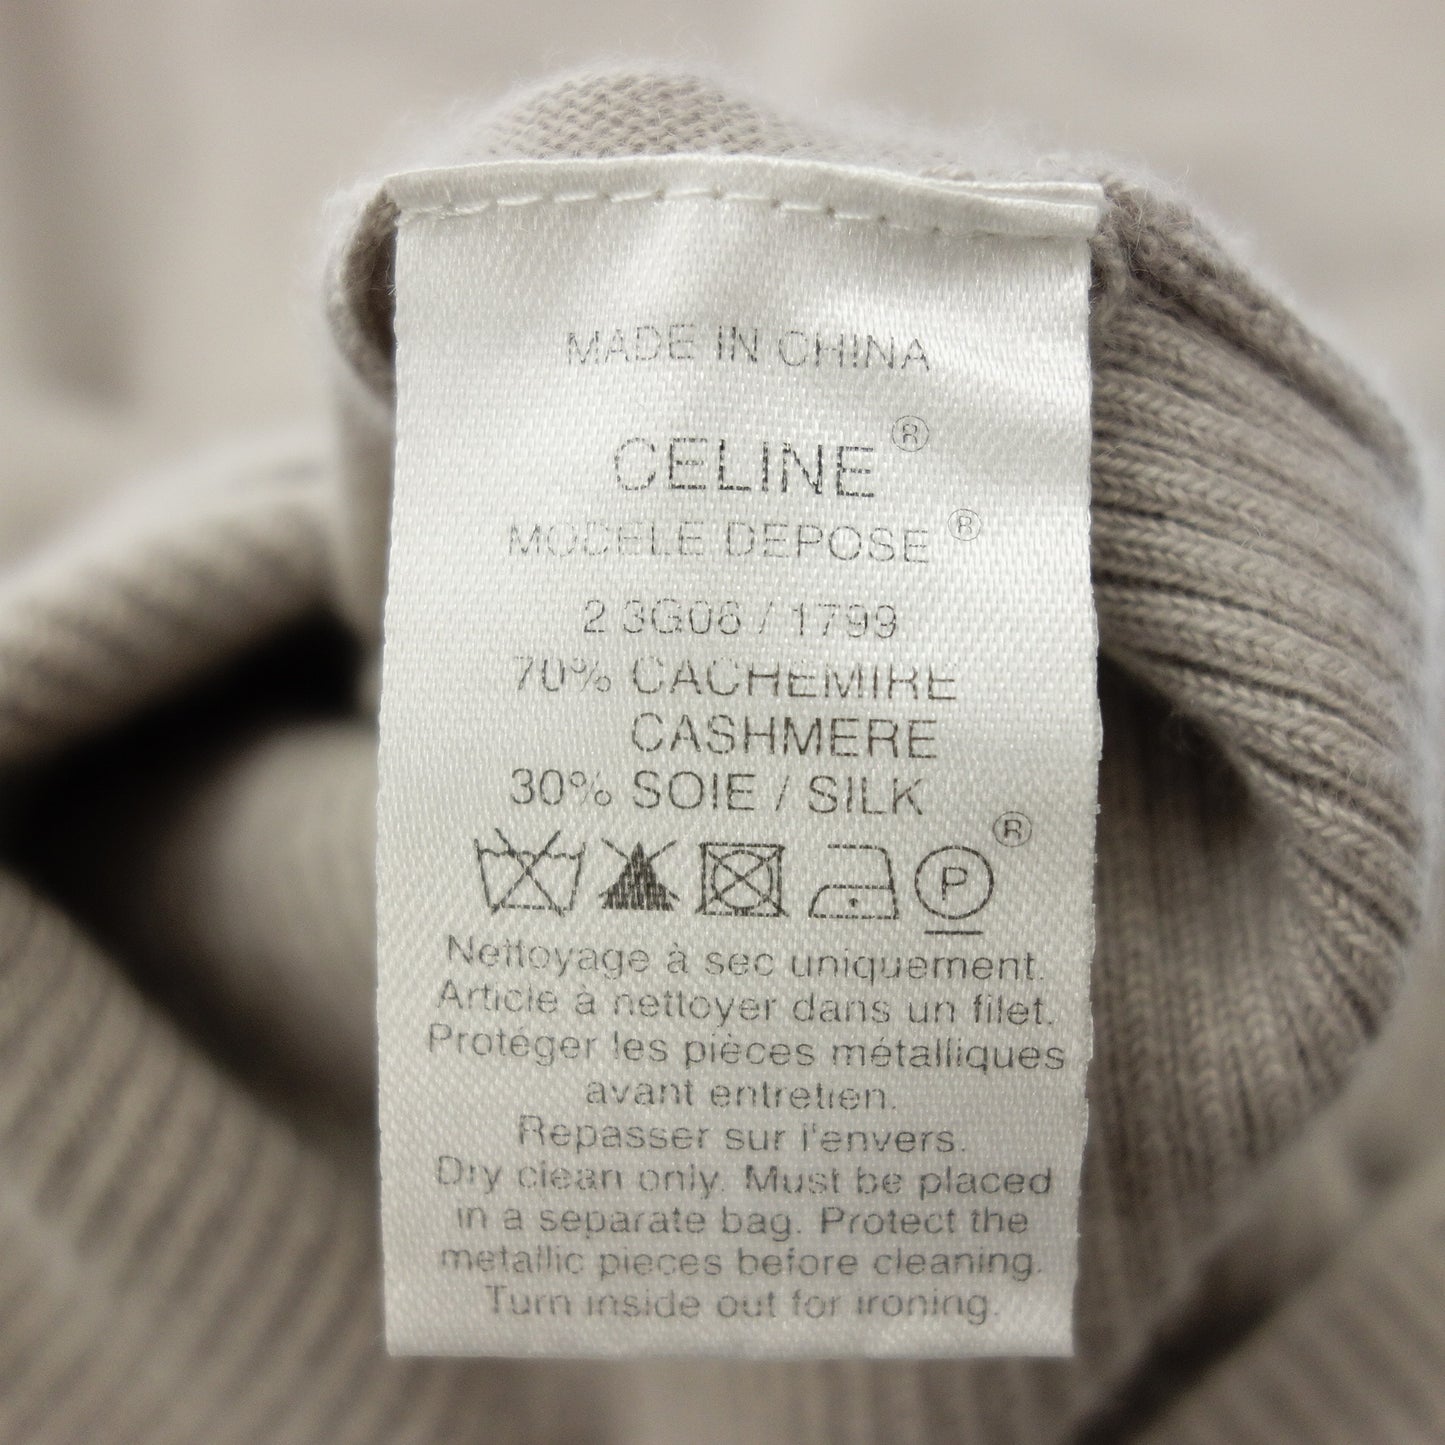 Celine Knit Sweater Silver Hardware Women's Light Gray M CELINE [AFB22] [Used] 